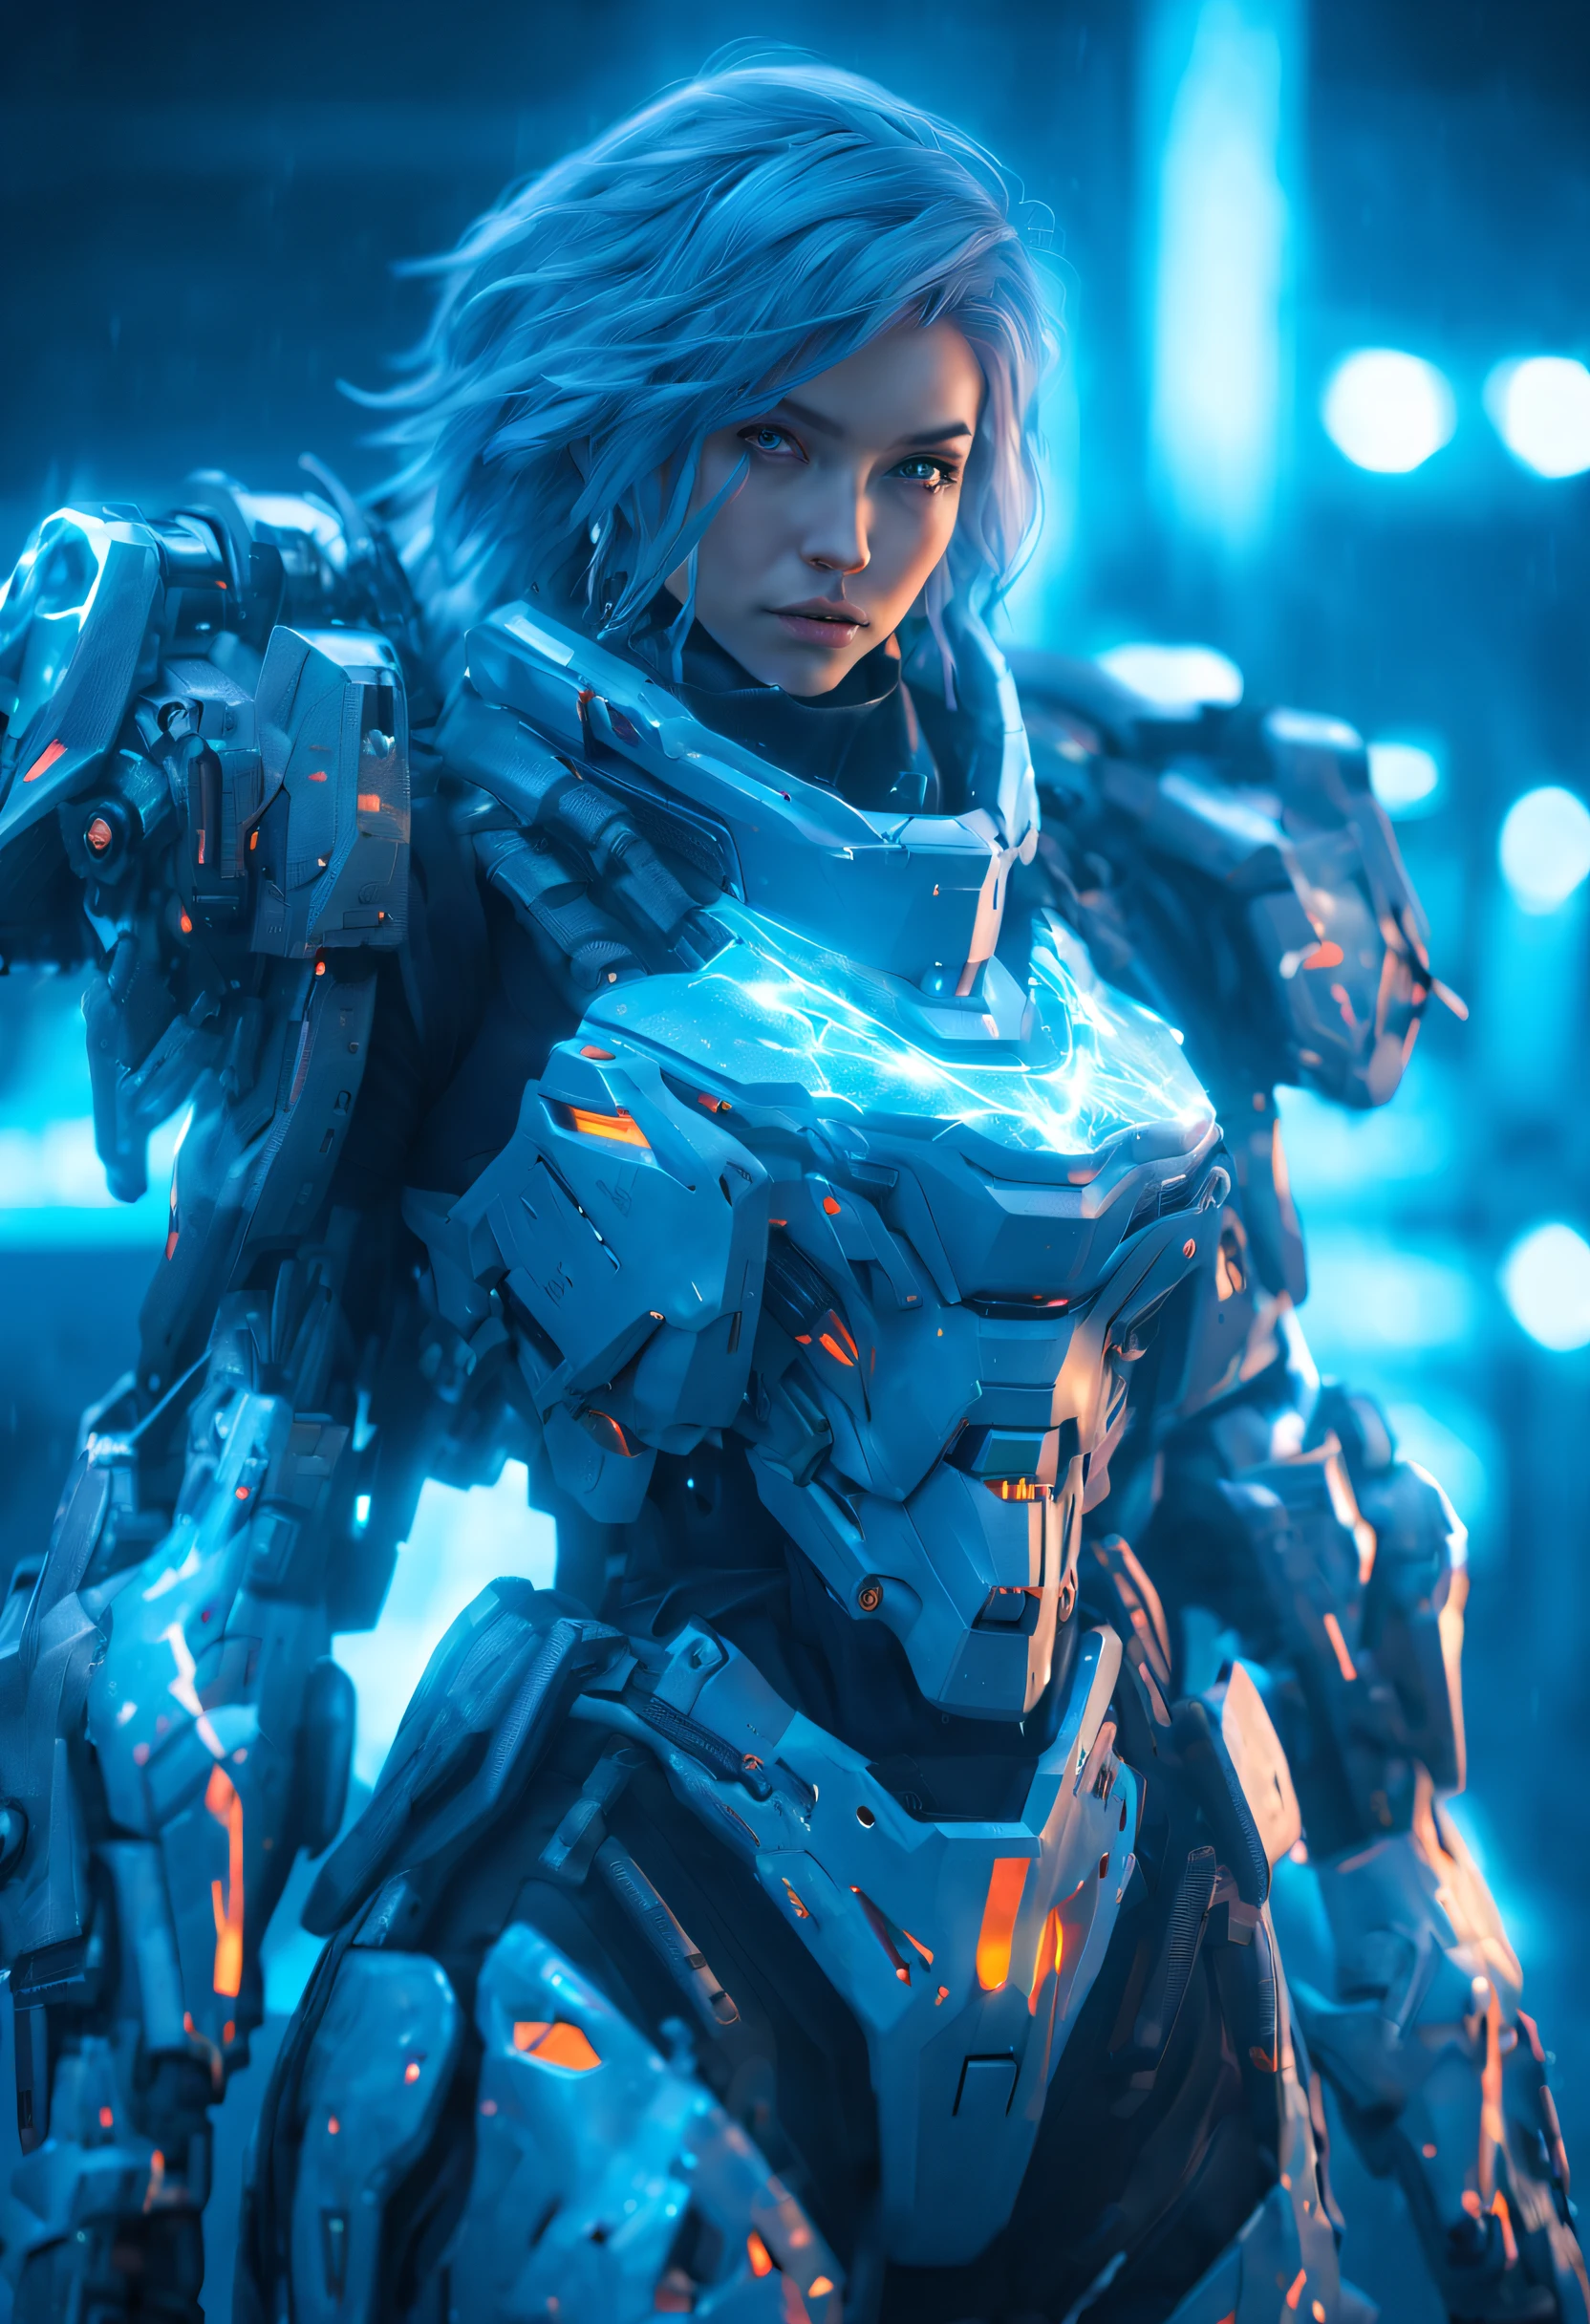 uma garota mecânica, laser, armadura poderosa, Olhar afiado, geada, chamas, detalhes perfeitos, (melhor qualidade, 4K, alta resolução, obra de arte:1.2), Ultra-detalhado, realista:1.37, HDR, iluminação de estúdio, cores vivas, (Ciberpunk, futurista) estilo, esquema de cores azul gelado, Iluminação dinâmica.